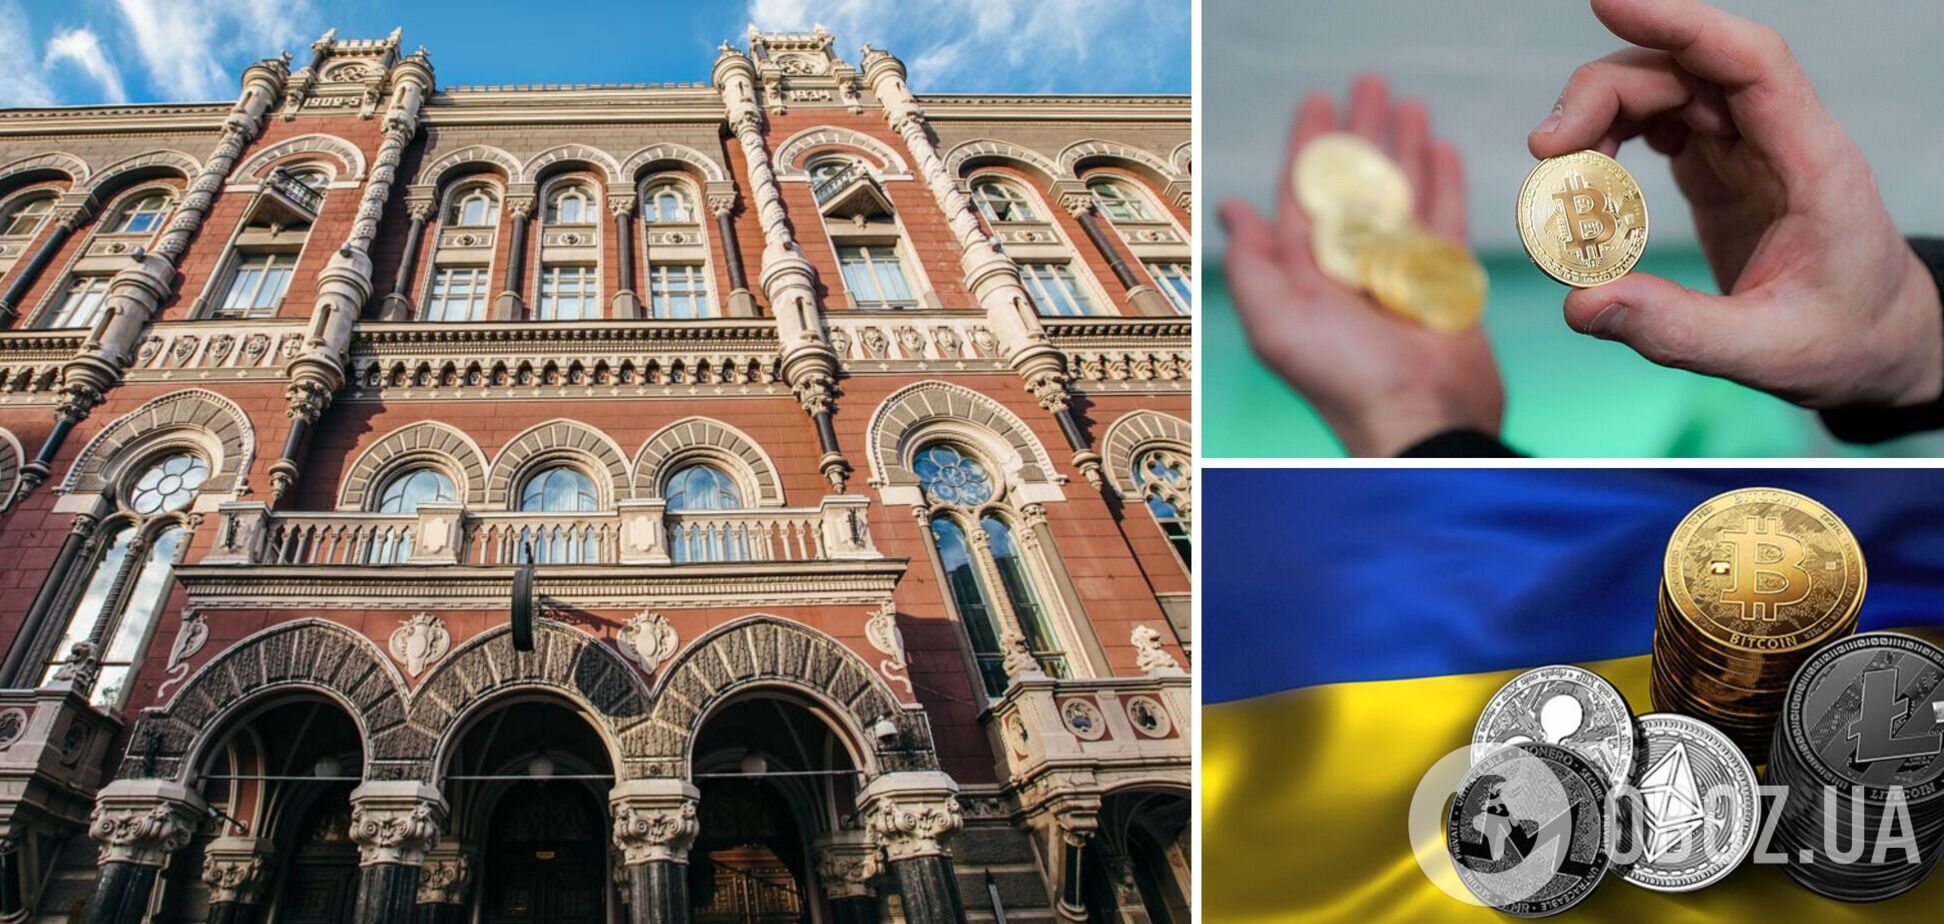 Нацбанк обозначил свои позиции касательно будущего криптовалют в Украине